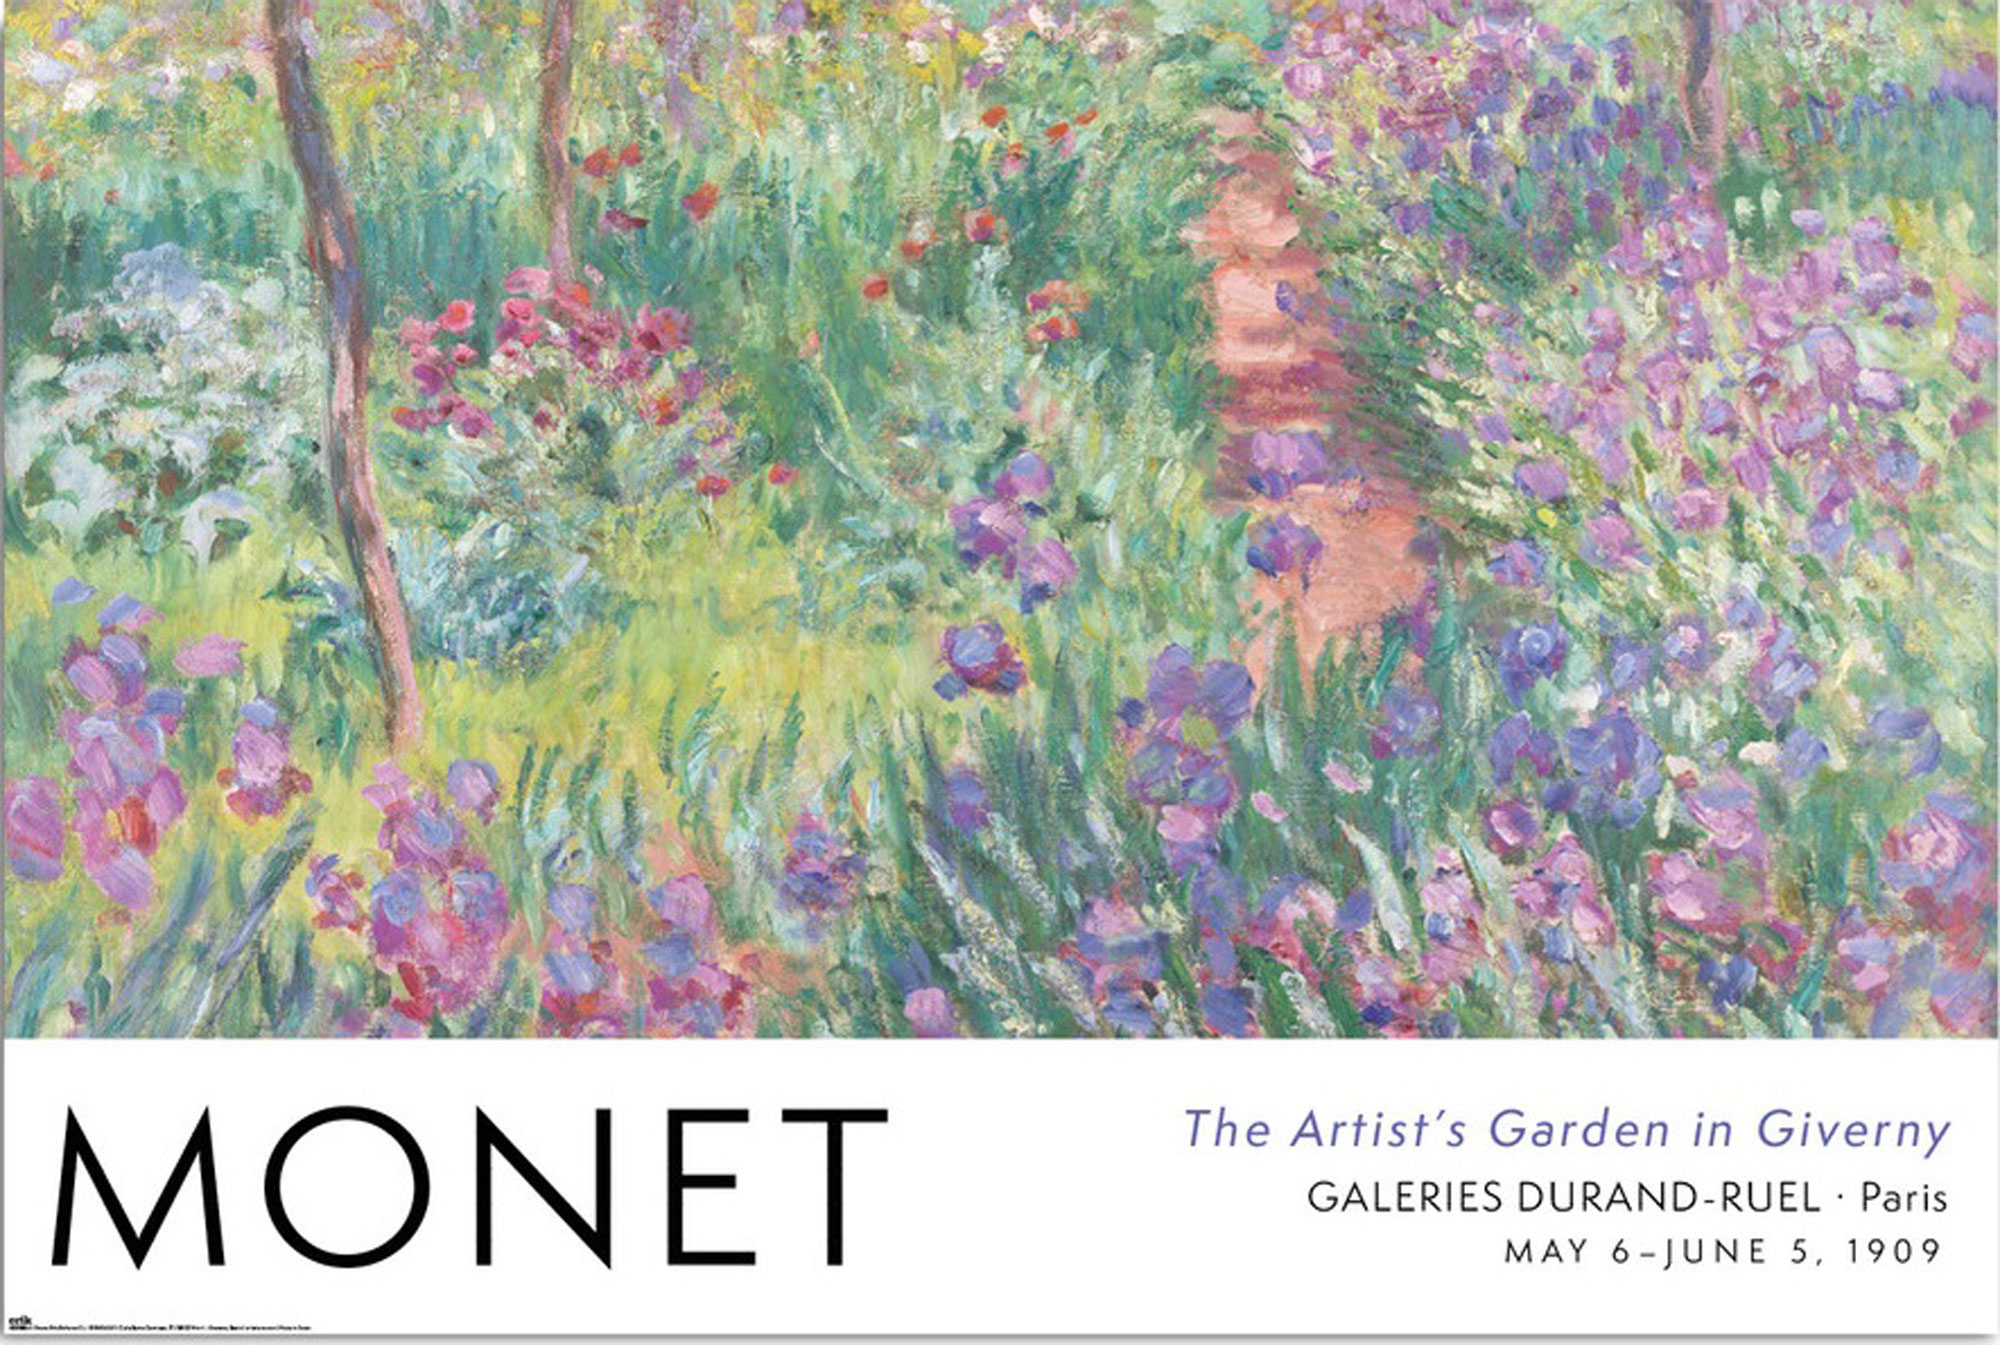 Monet, in Garden Giverny - Claude